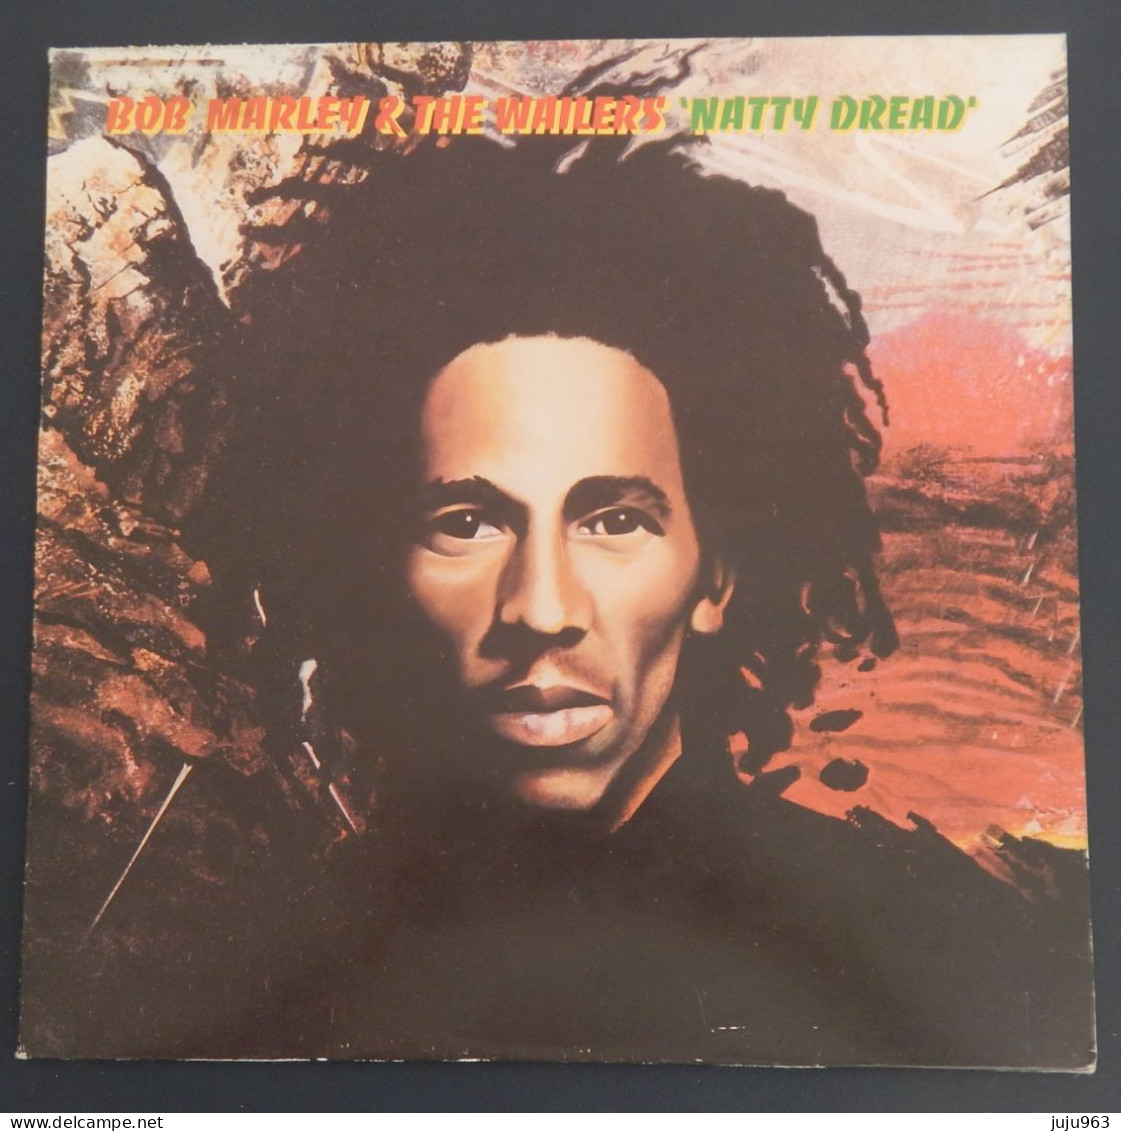 VINYL LP 33 TOURS BOB MARLEY ET THE WAILERS "NATTY DREAD" ANNEE 1974 POCHETTE  BON ETAT- TRES BON ETAT D ECOUTE  3 SCANS - Reggae